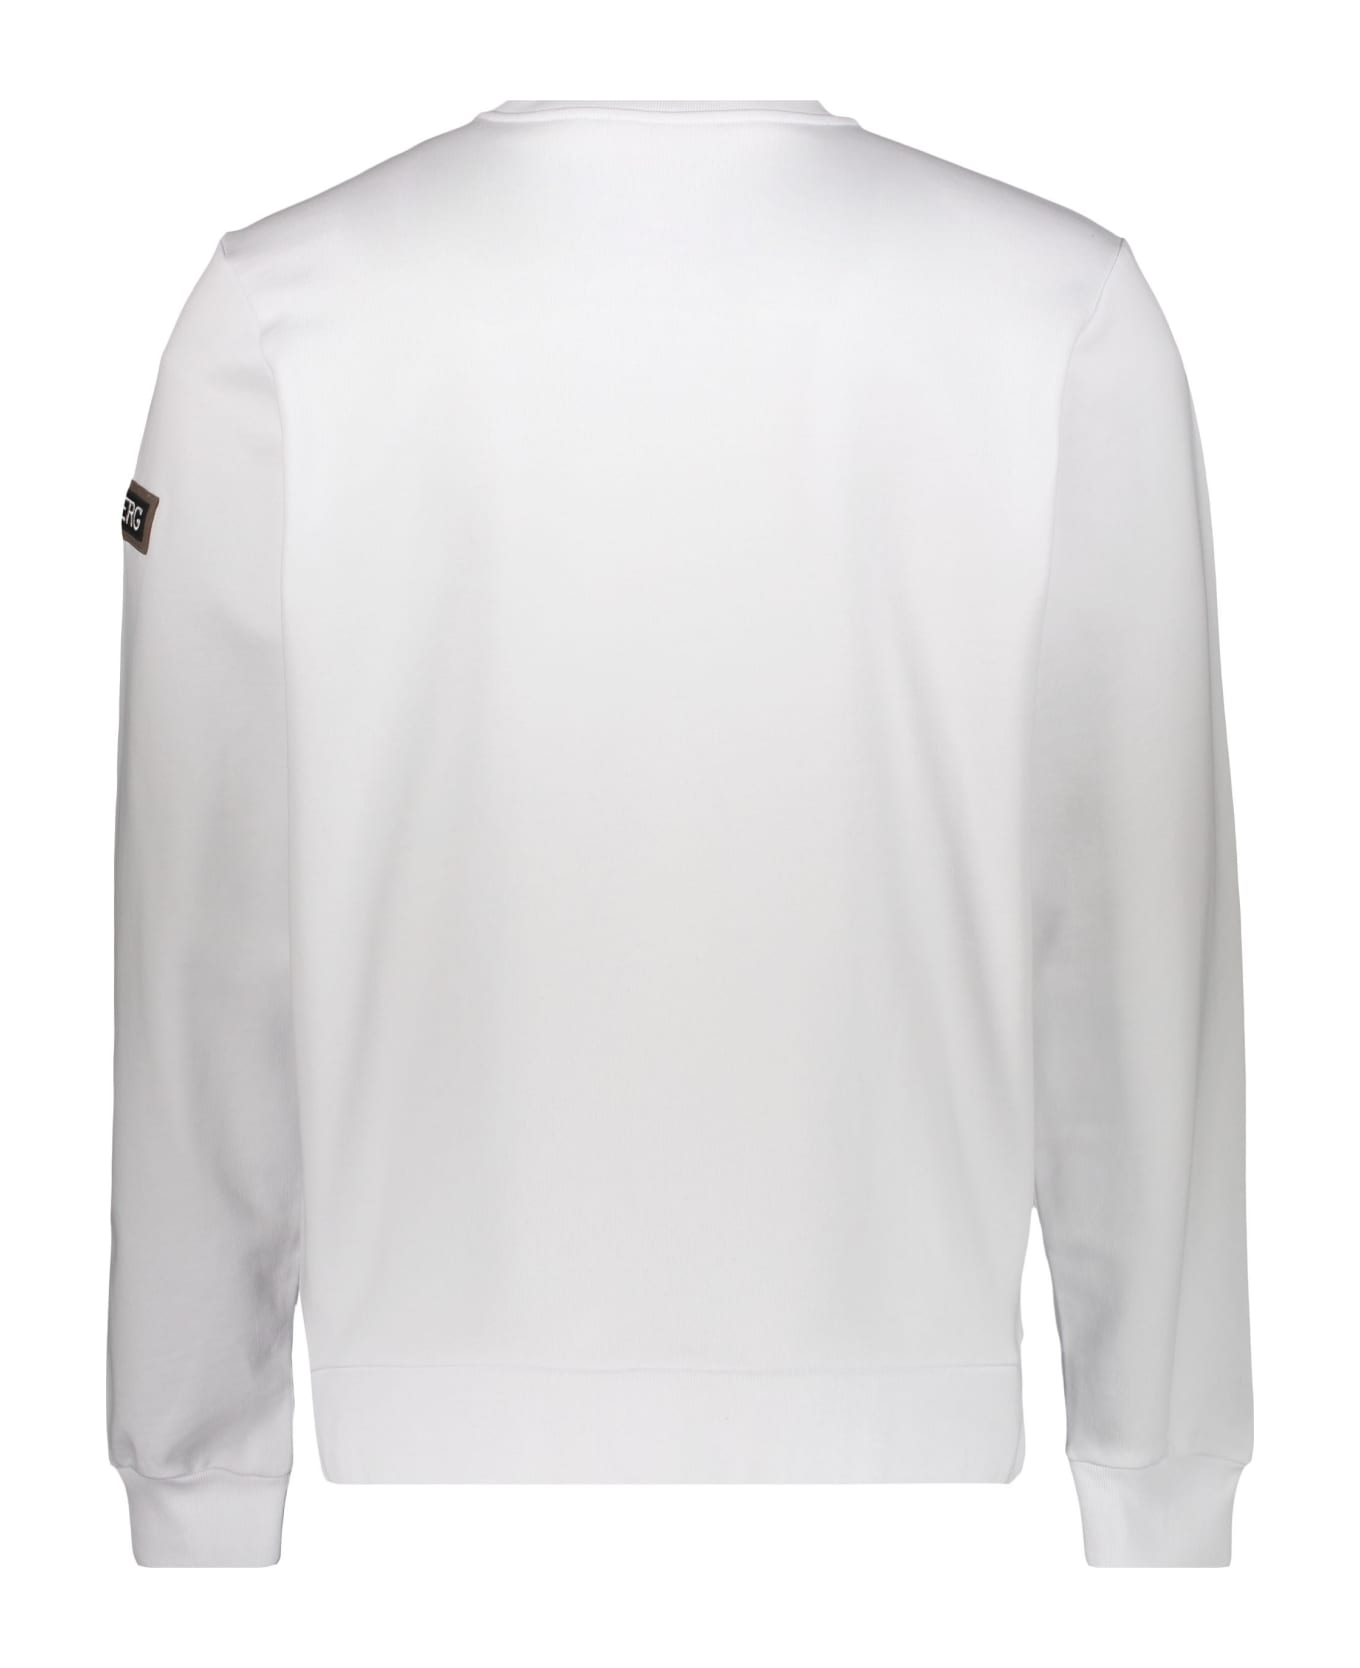 Iceberg Printed Cotton Sweatshirt - White